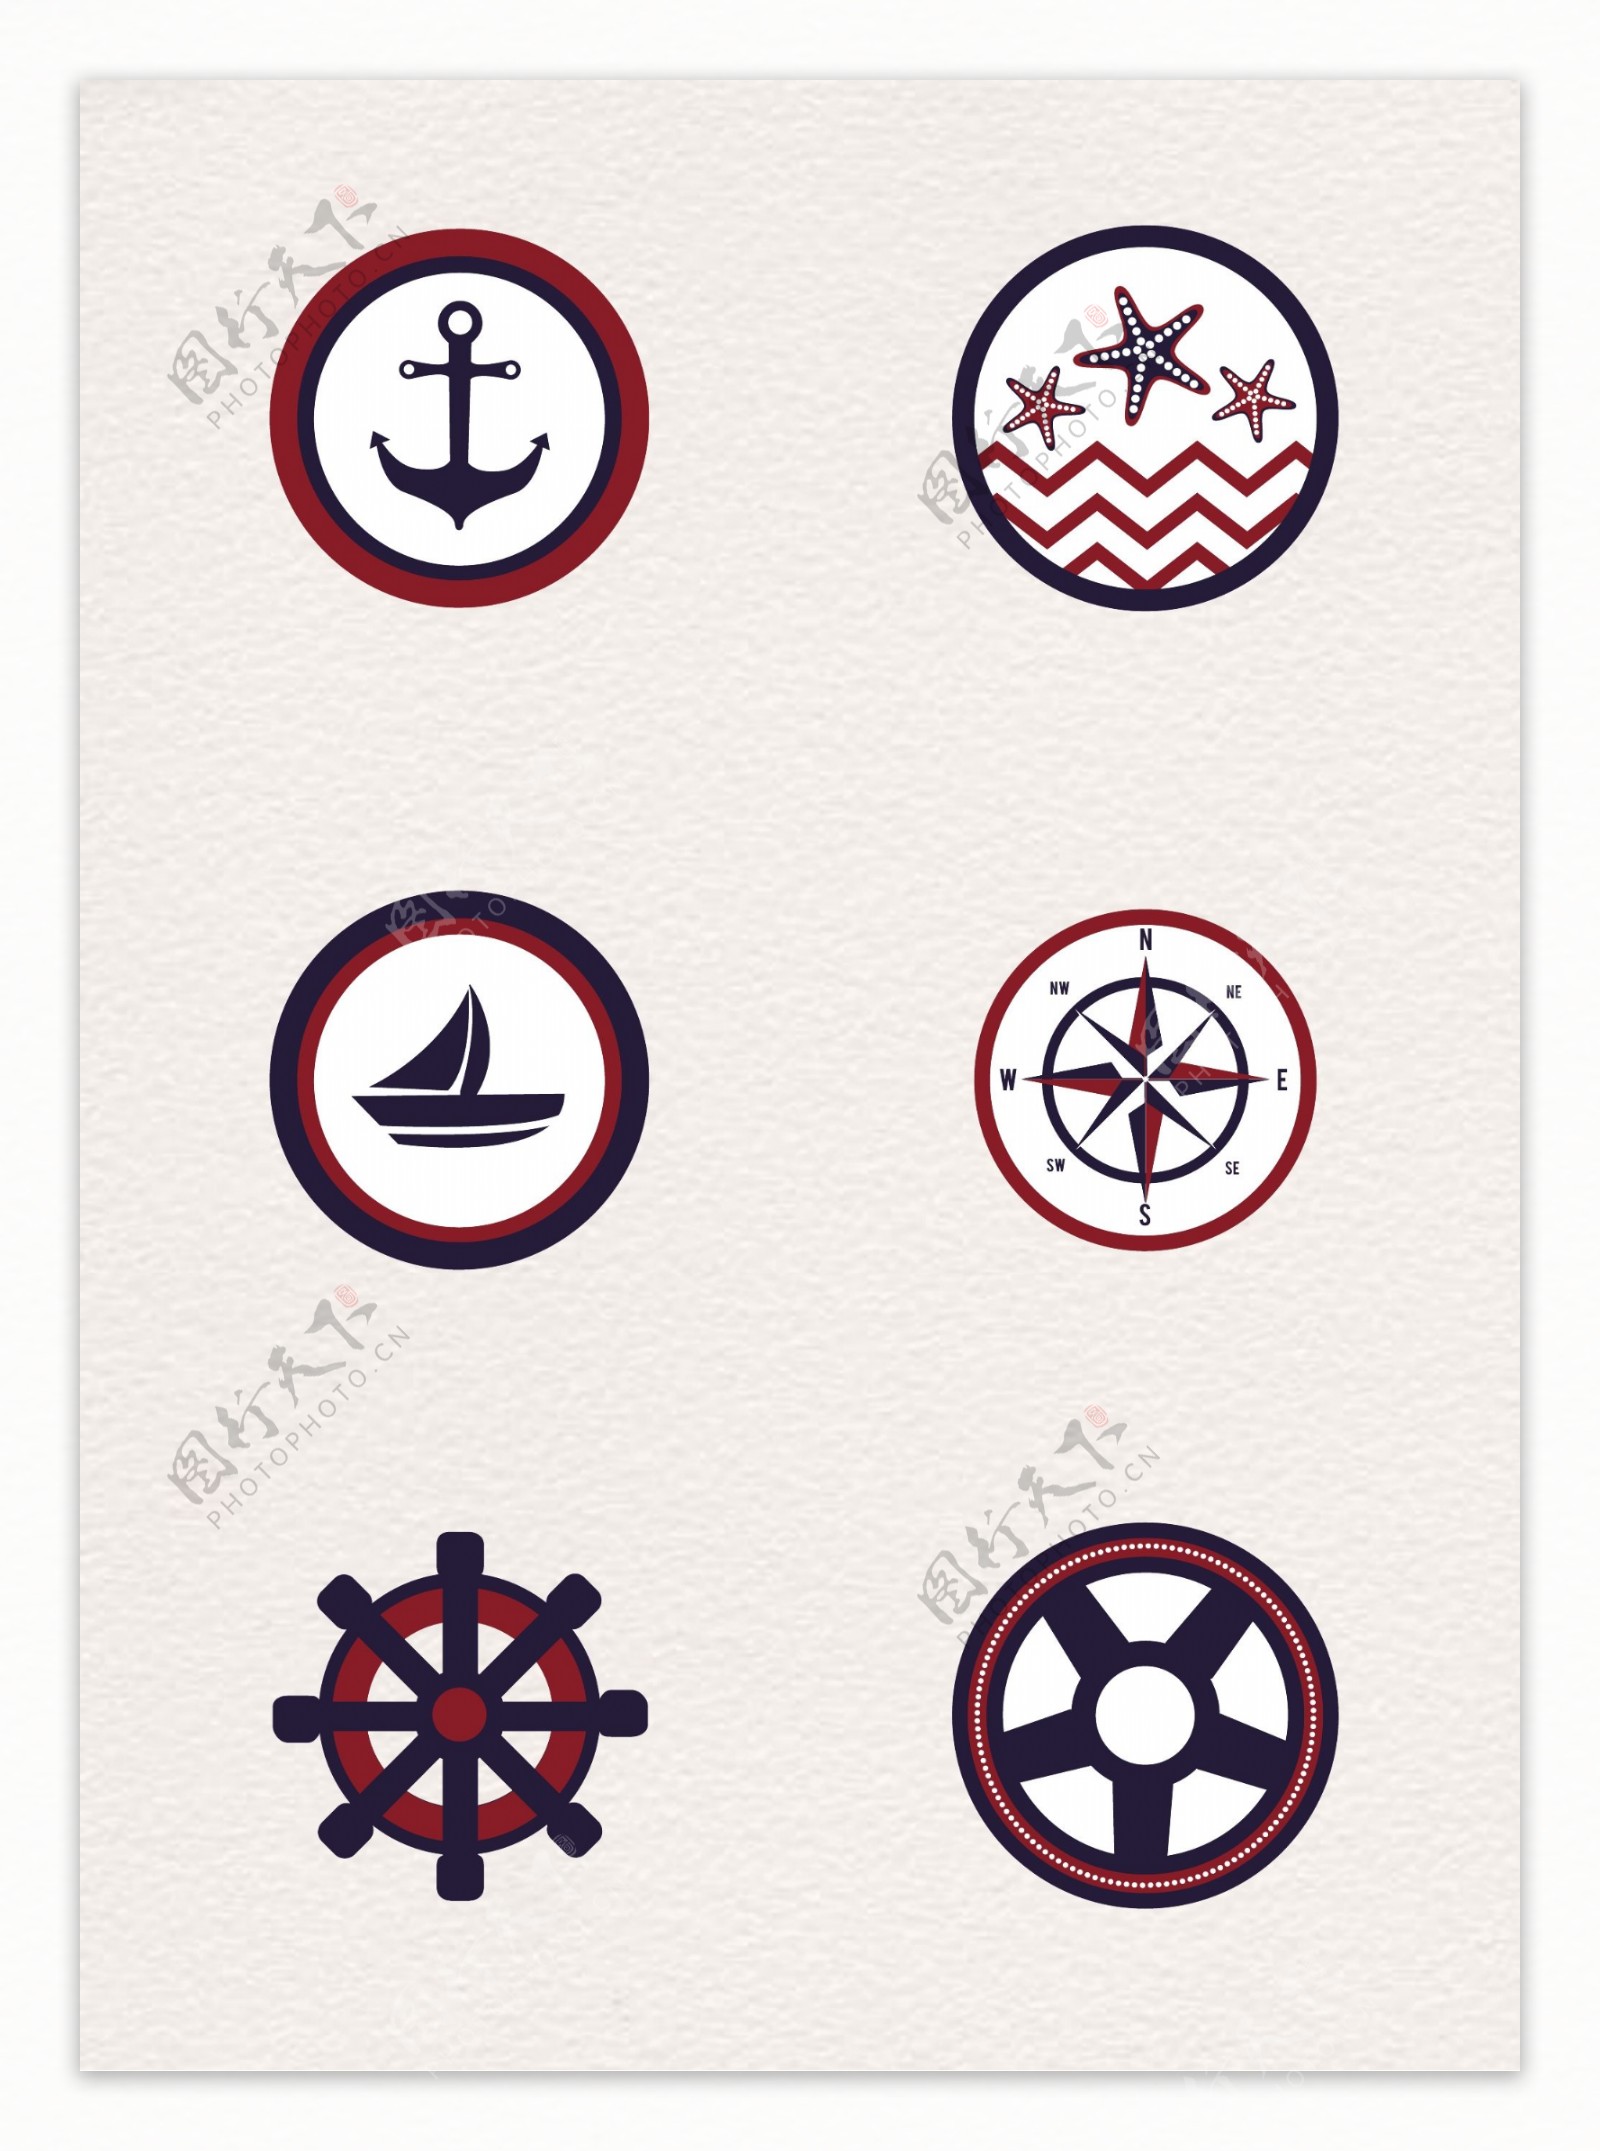 6款创意航海标志矢量素材